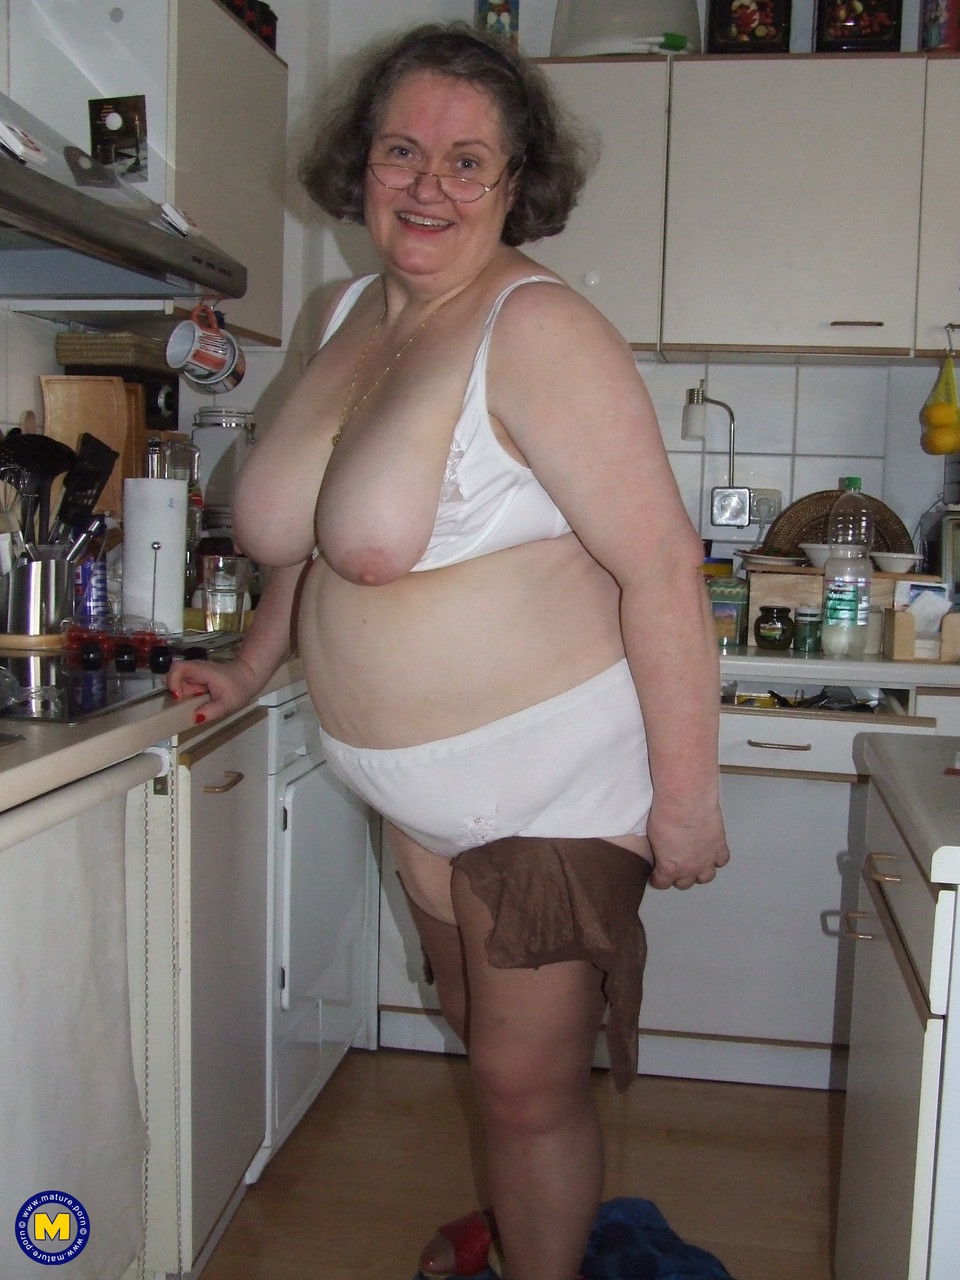 Fat mature housewife Birgid masturbates with a cucumber in the kitchen foto porno #423883223 | Mature NL Pics, Birgid, Granny, porno mobile